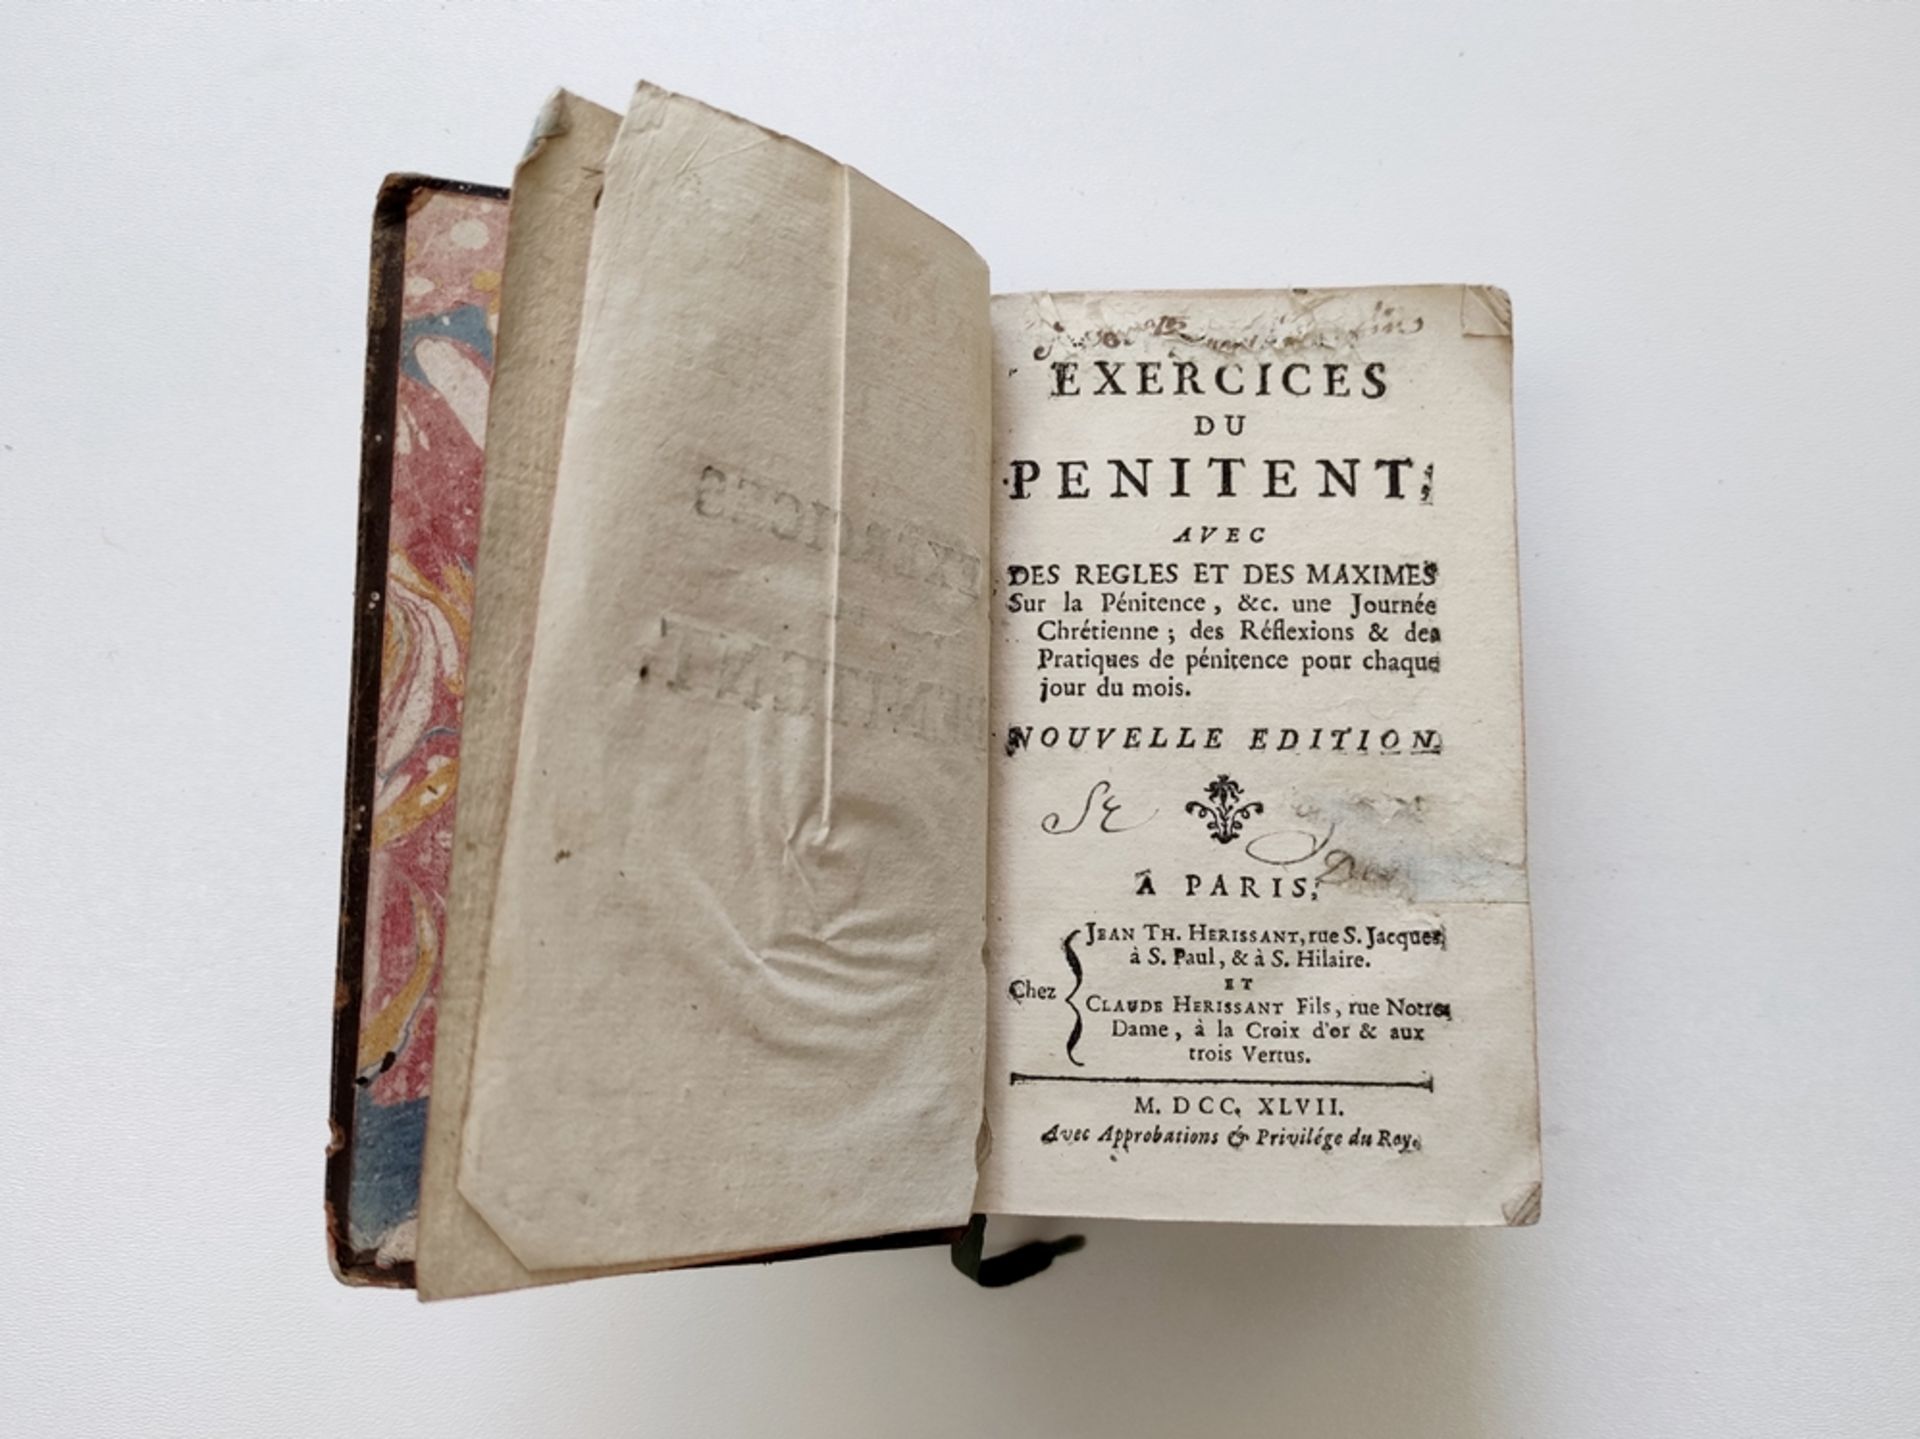 Convolute of 2 books, consisting of "Exercices du penitent avec des regles et des maximes sur la pé